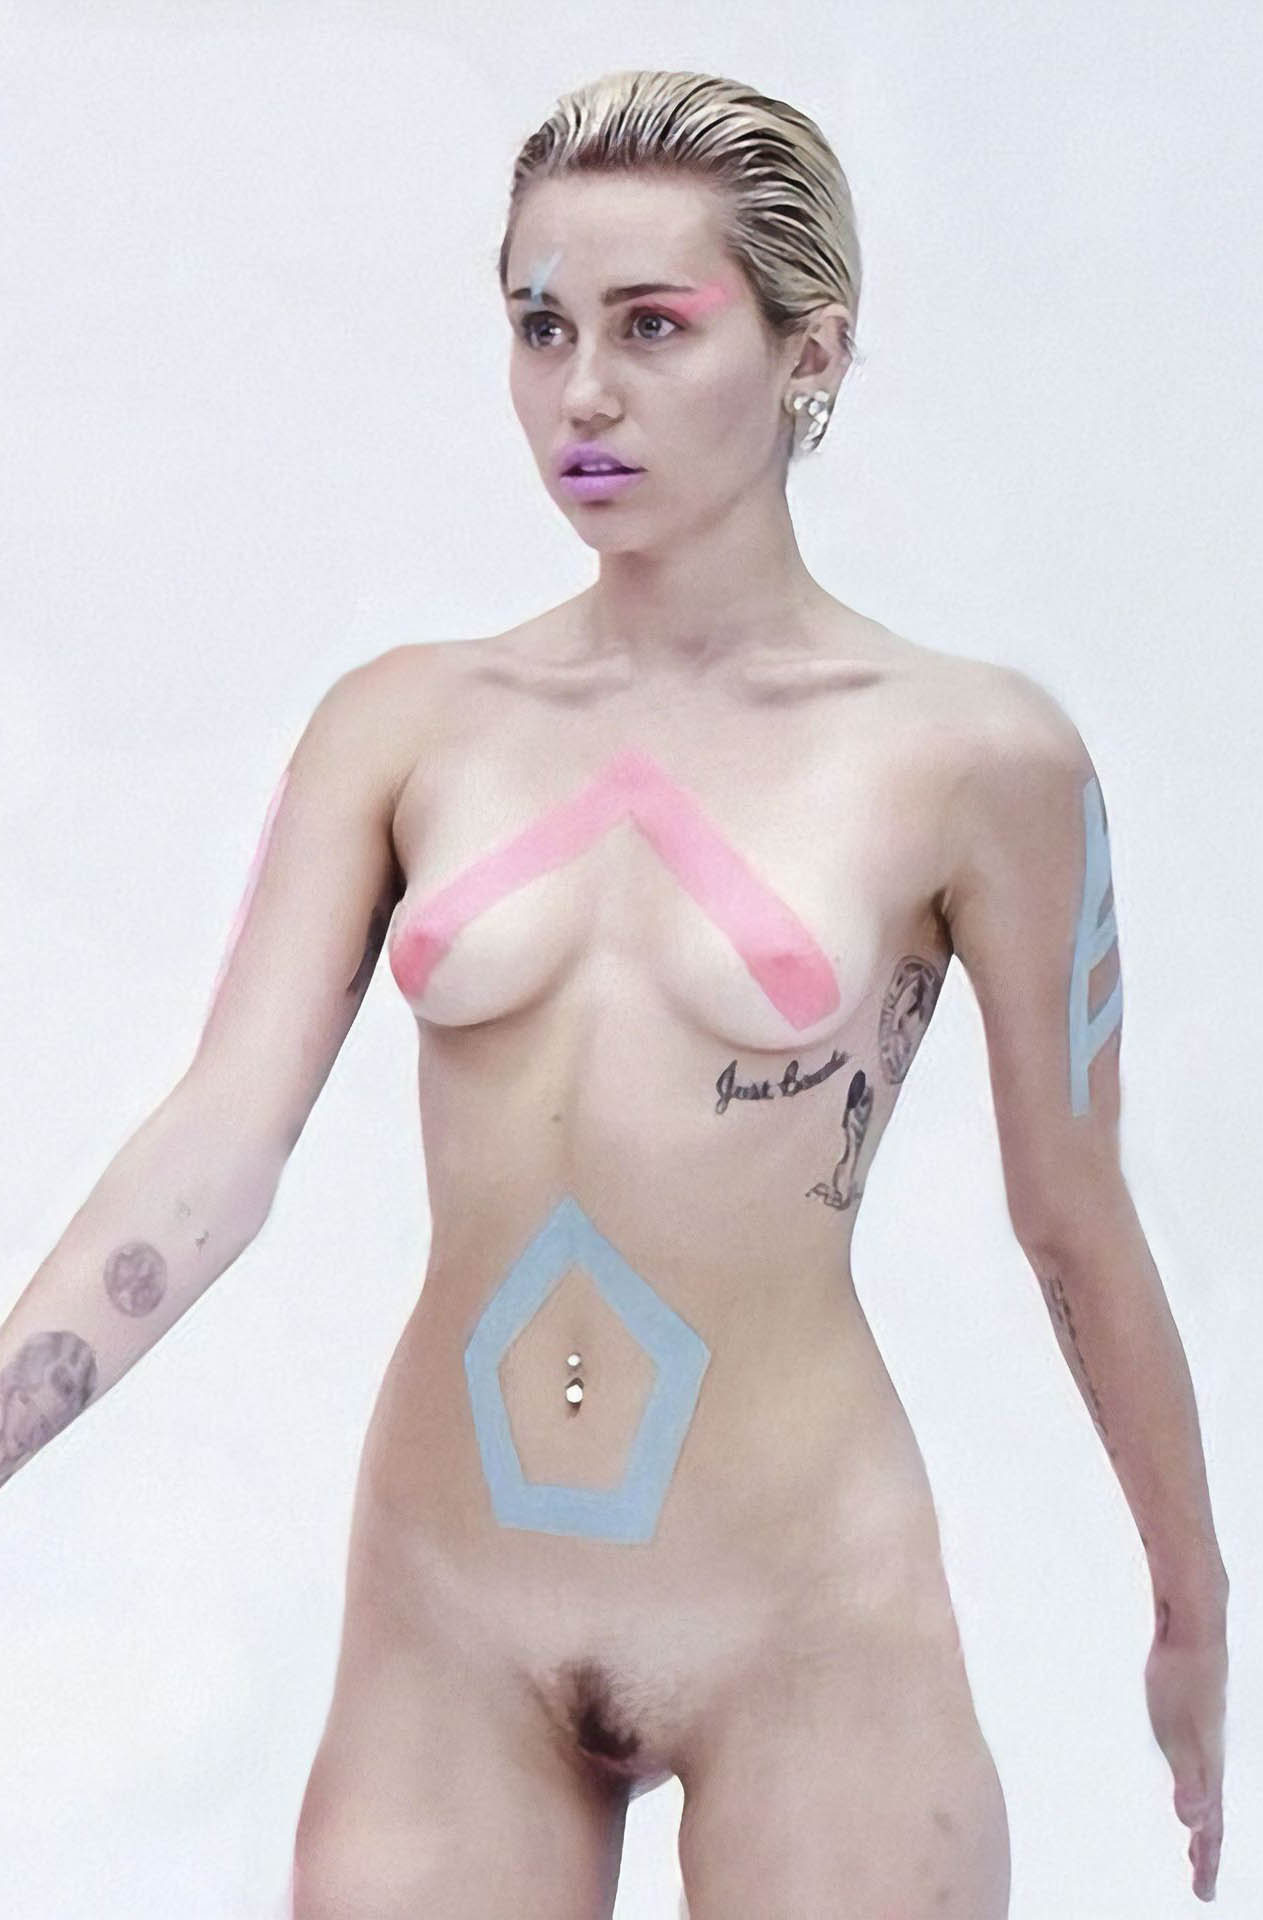 Γυμνές φωτογραφίες της Miley Cyrus